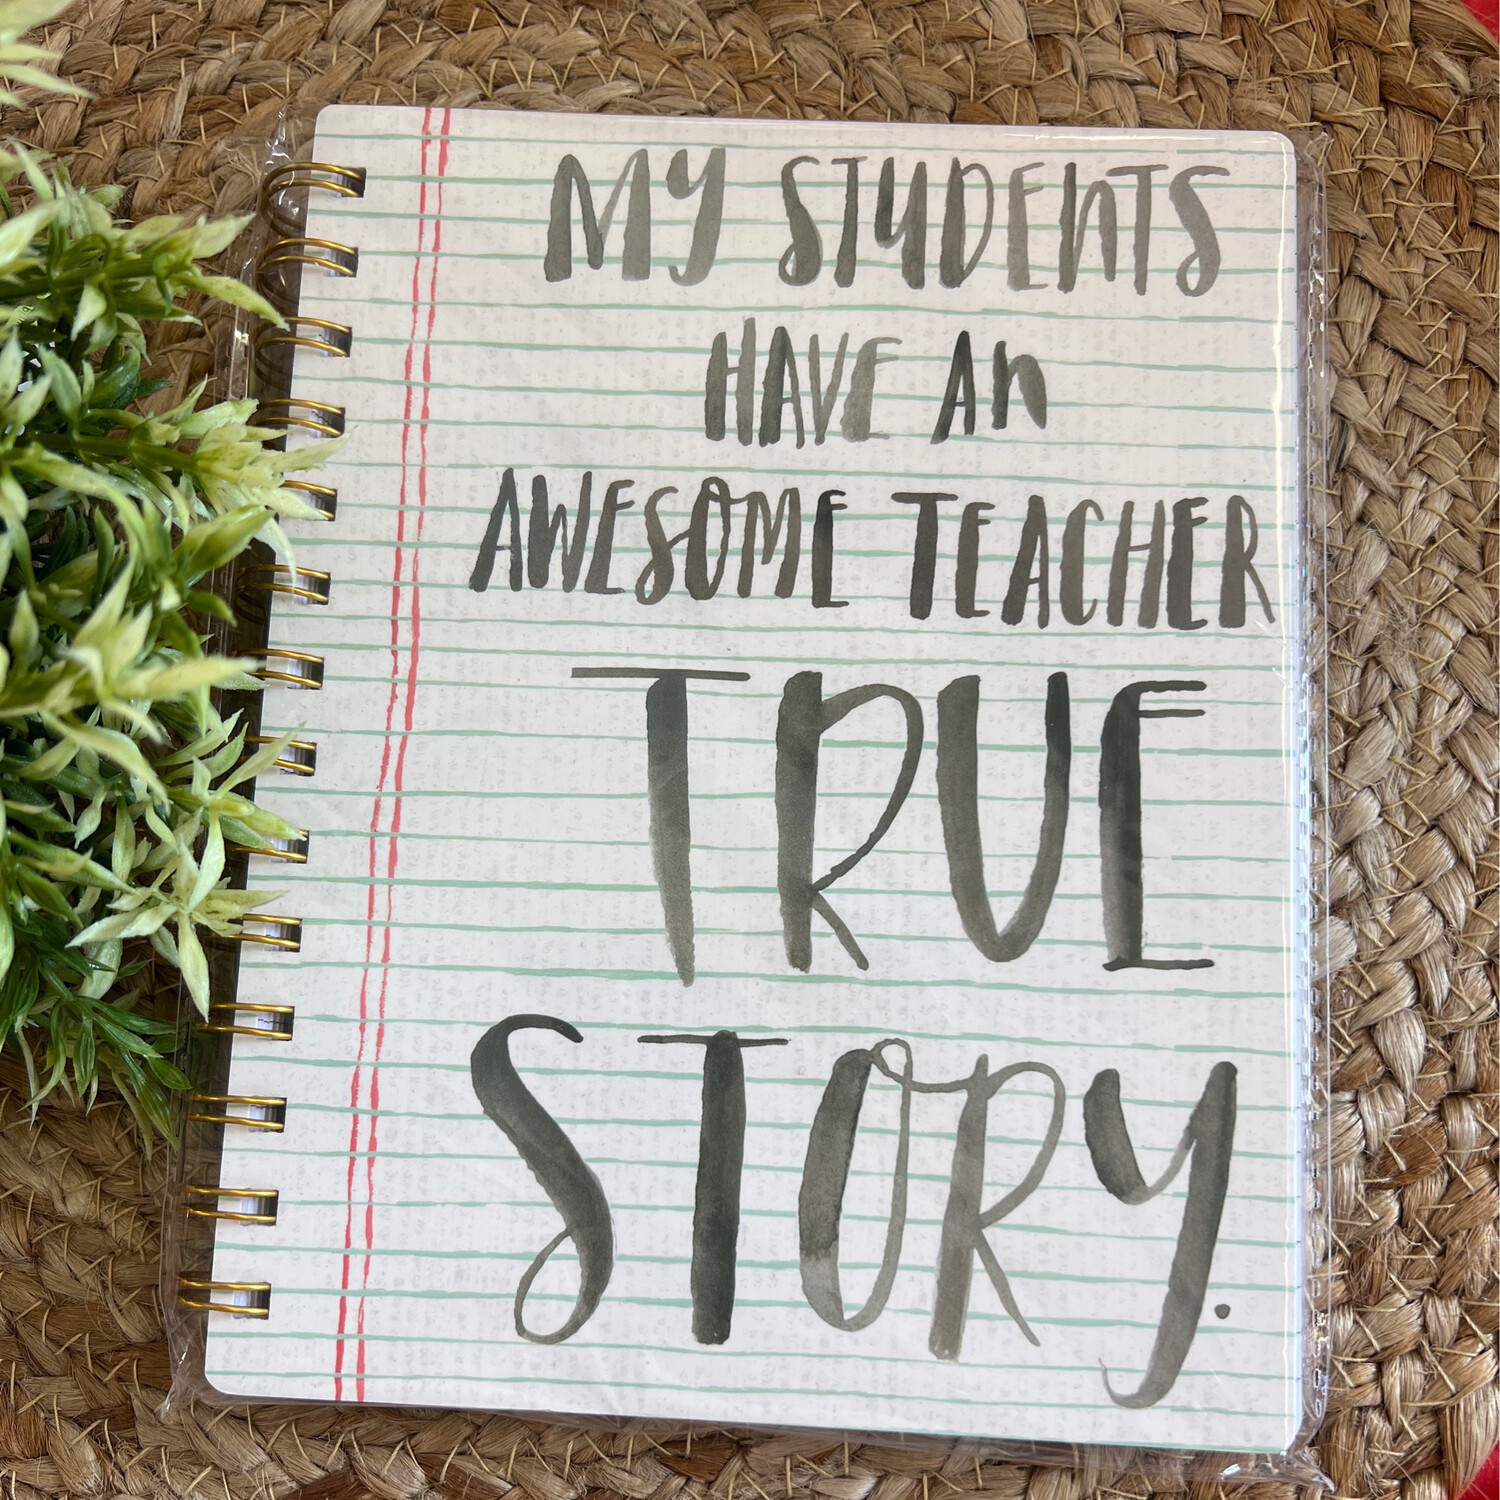 True Story Teach Notebook